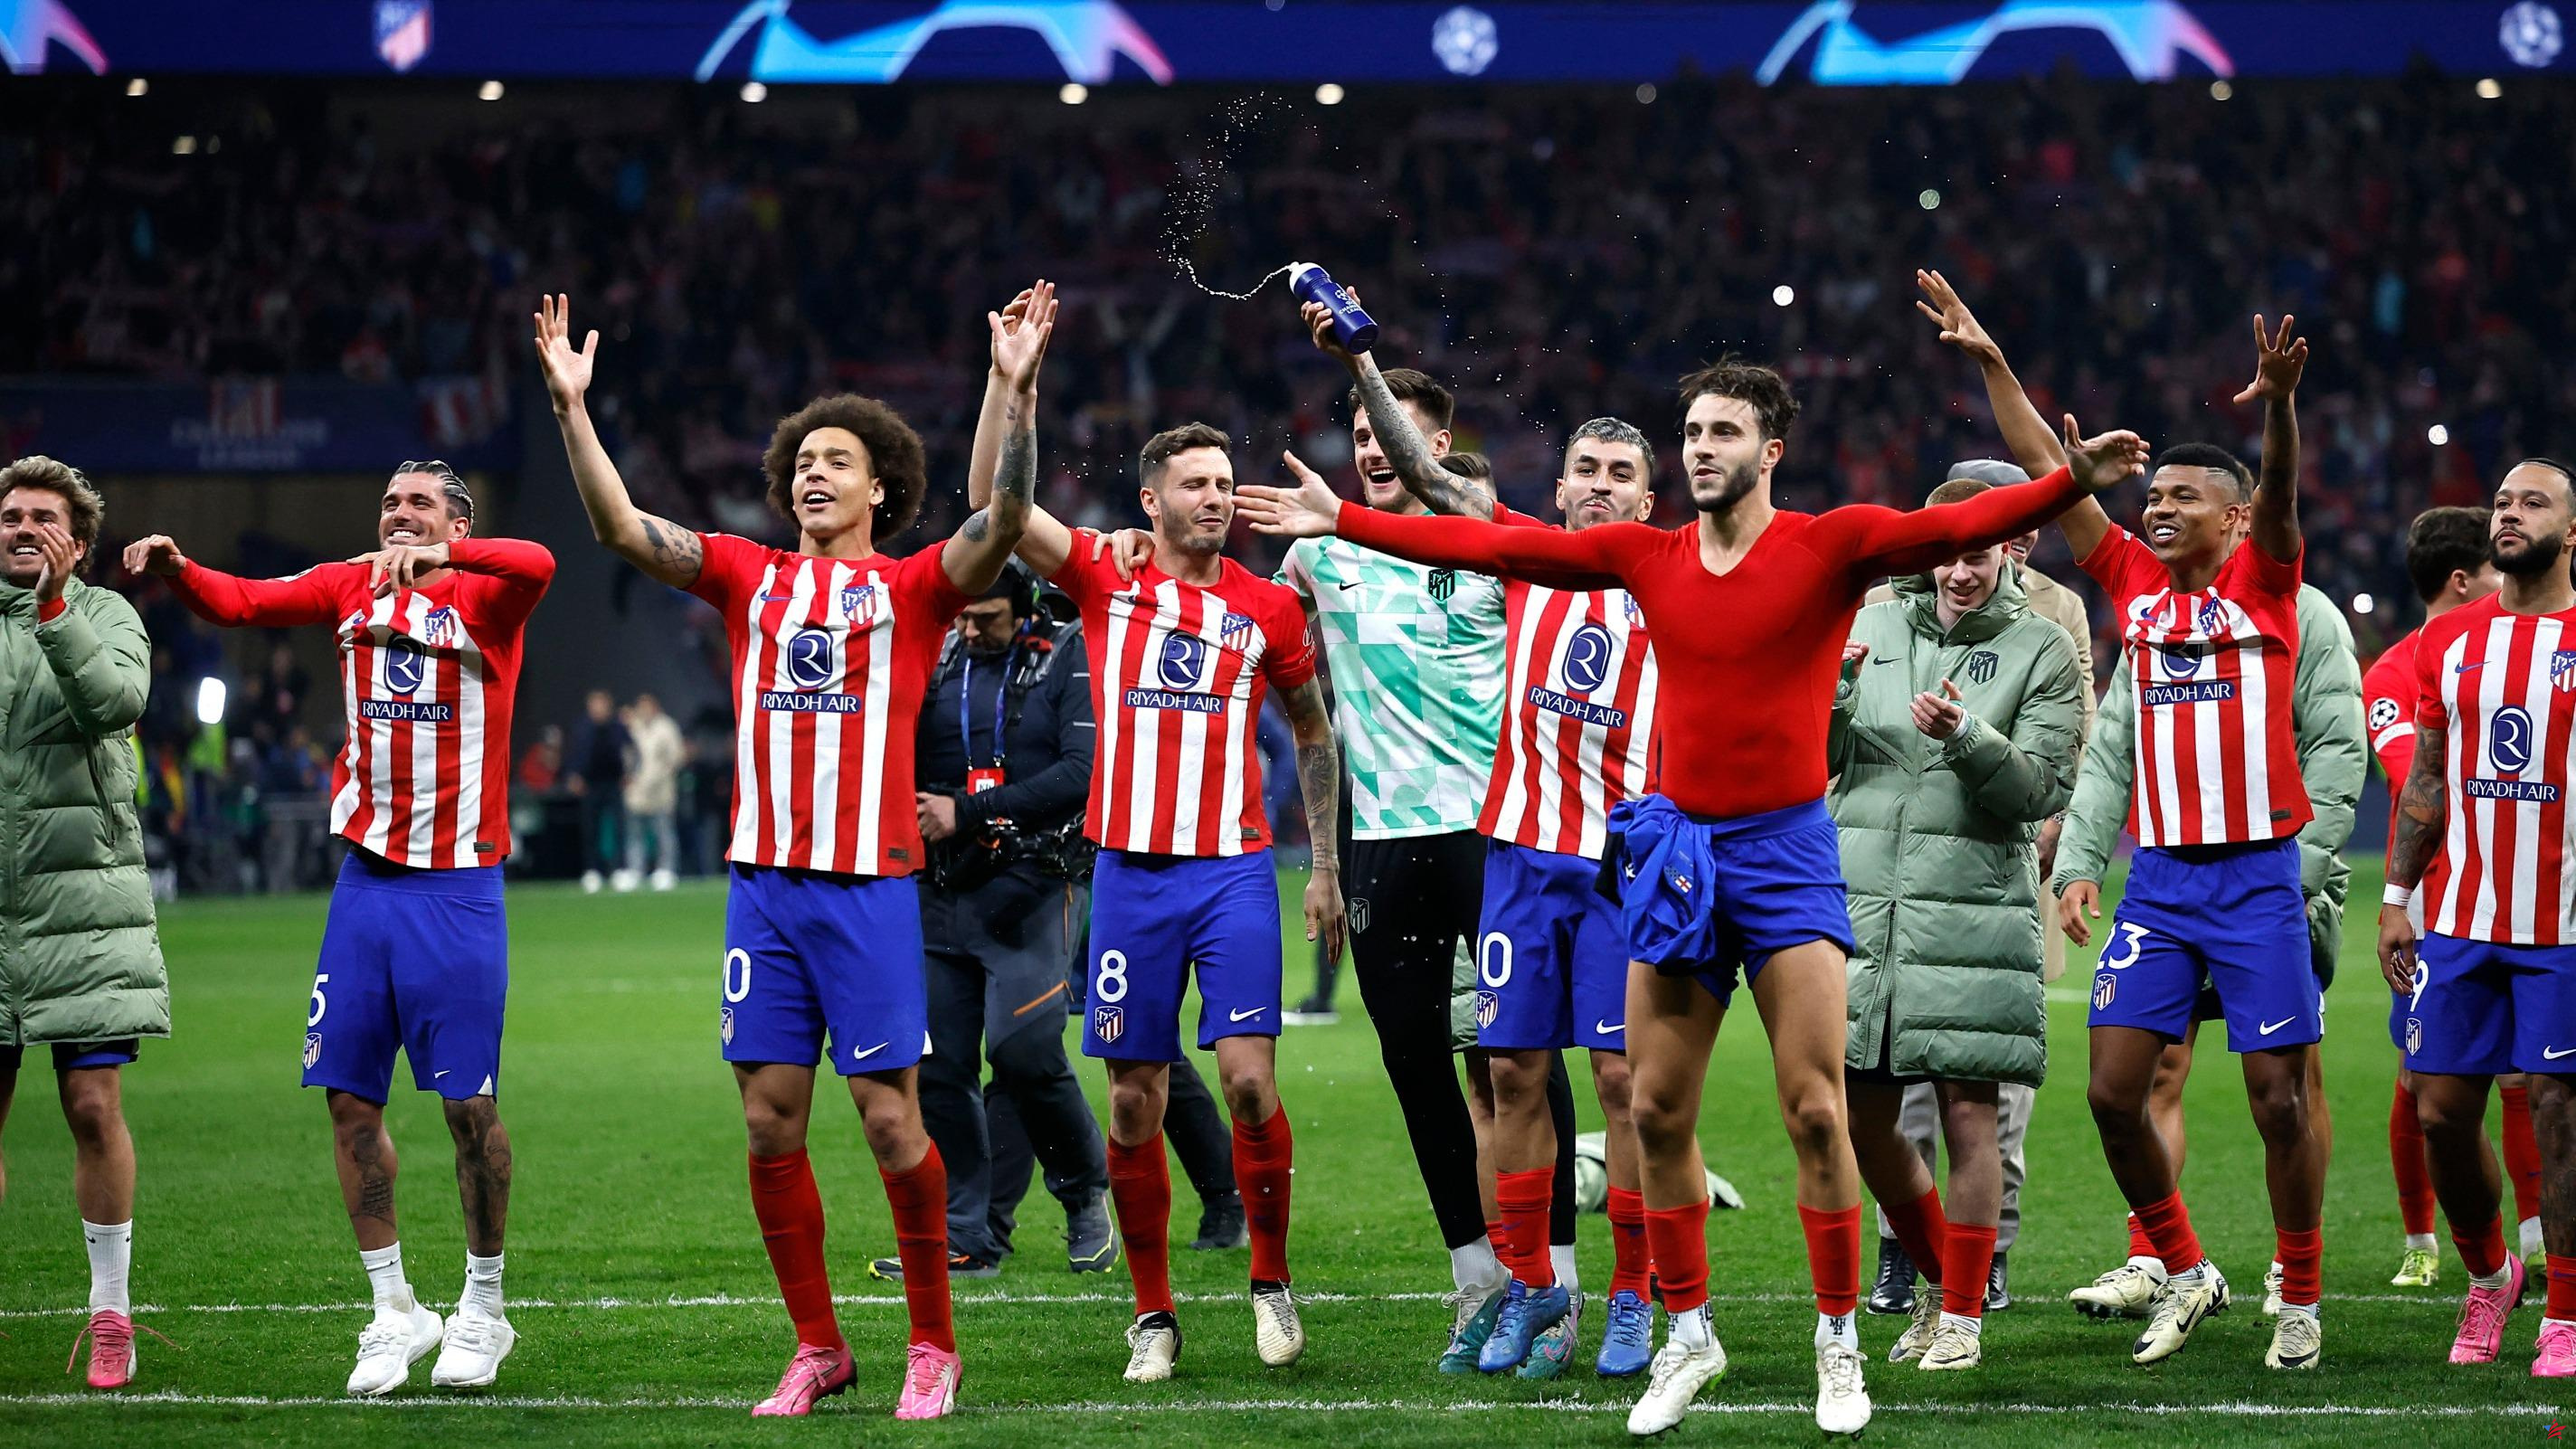 Liga de Campeones: Atlético de Madrid elimina al Inter de Milán en los penaltis y llega a cuartos